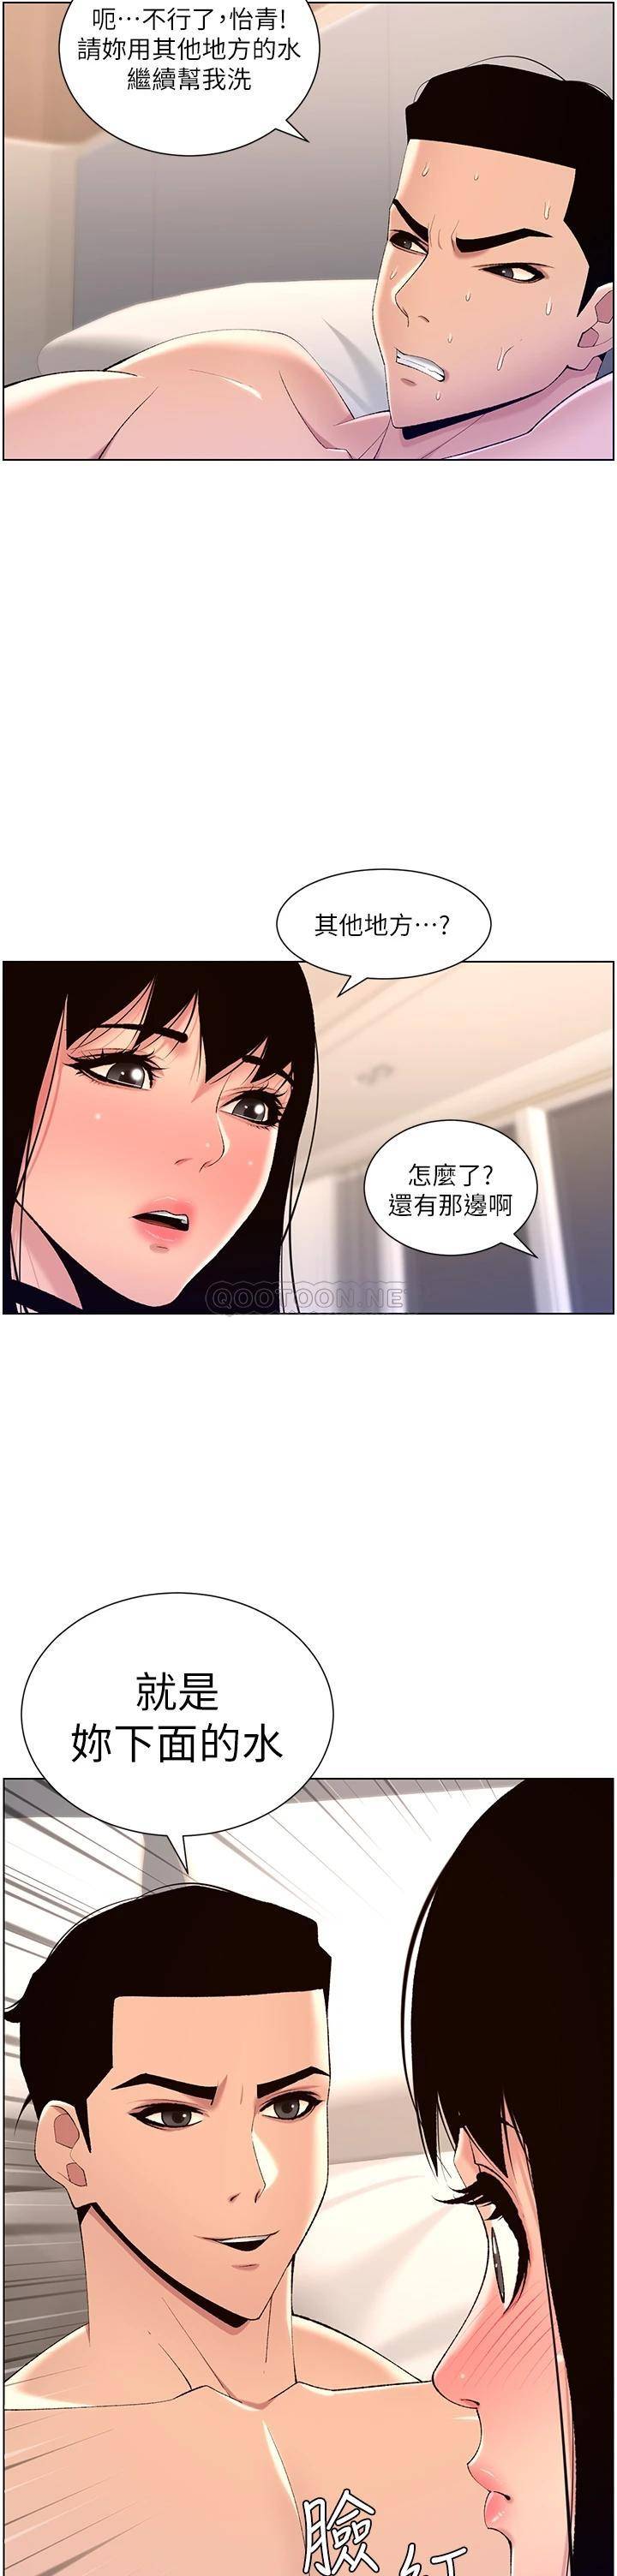 韩国污漫画 帝王App 第29话 棒棒太大塞不进来! 20